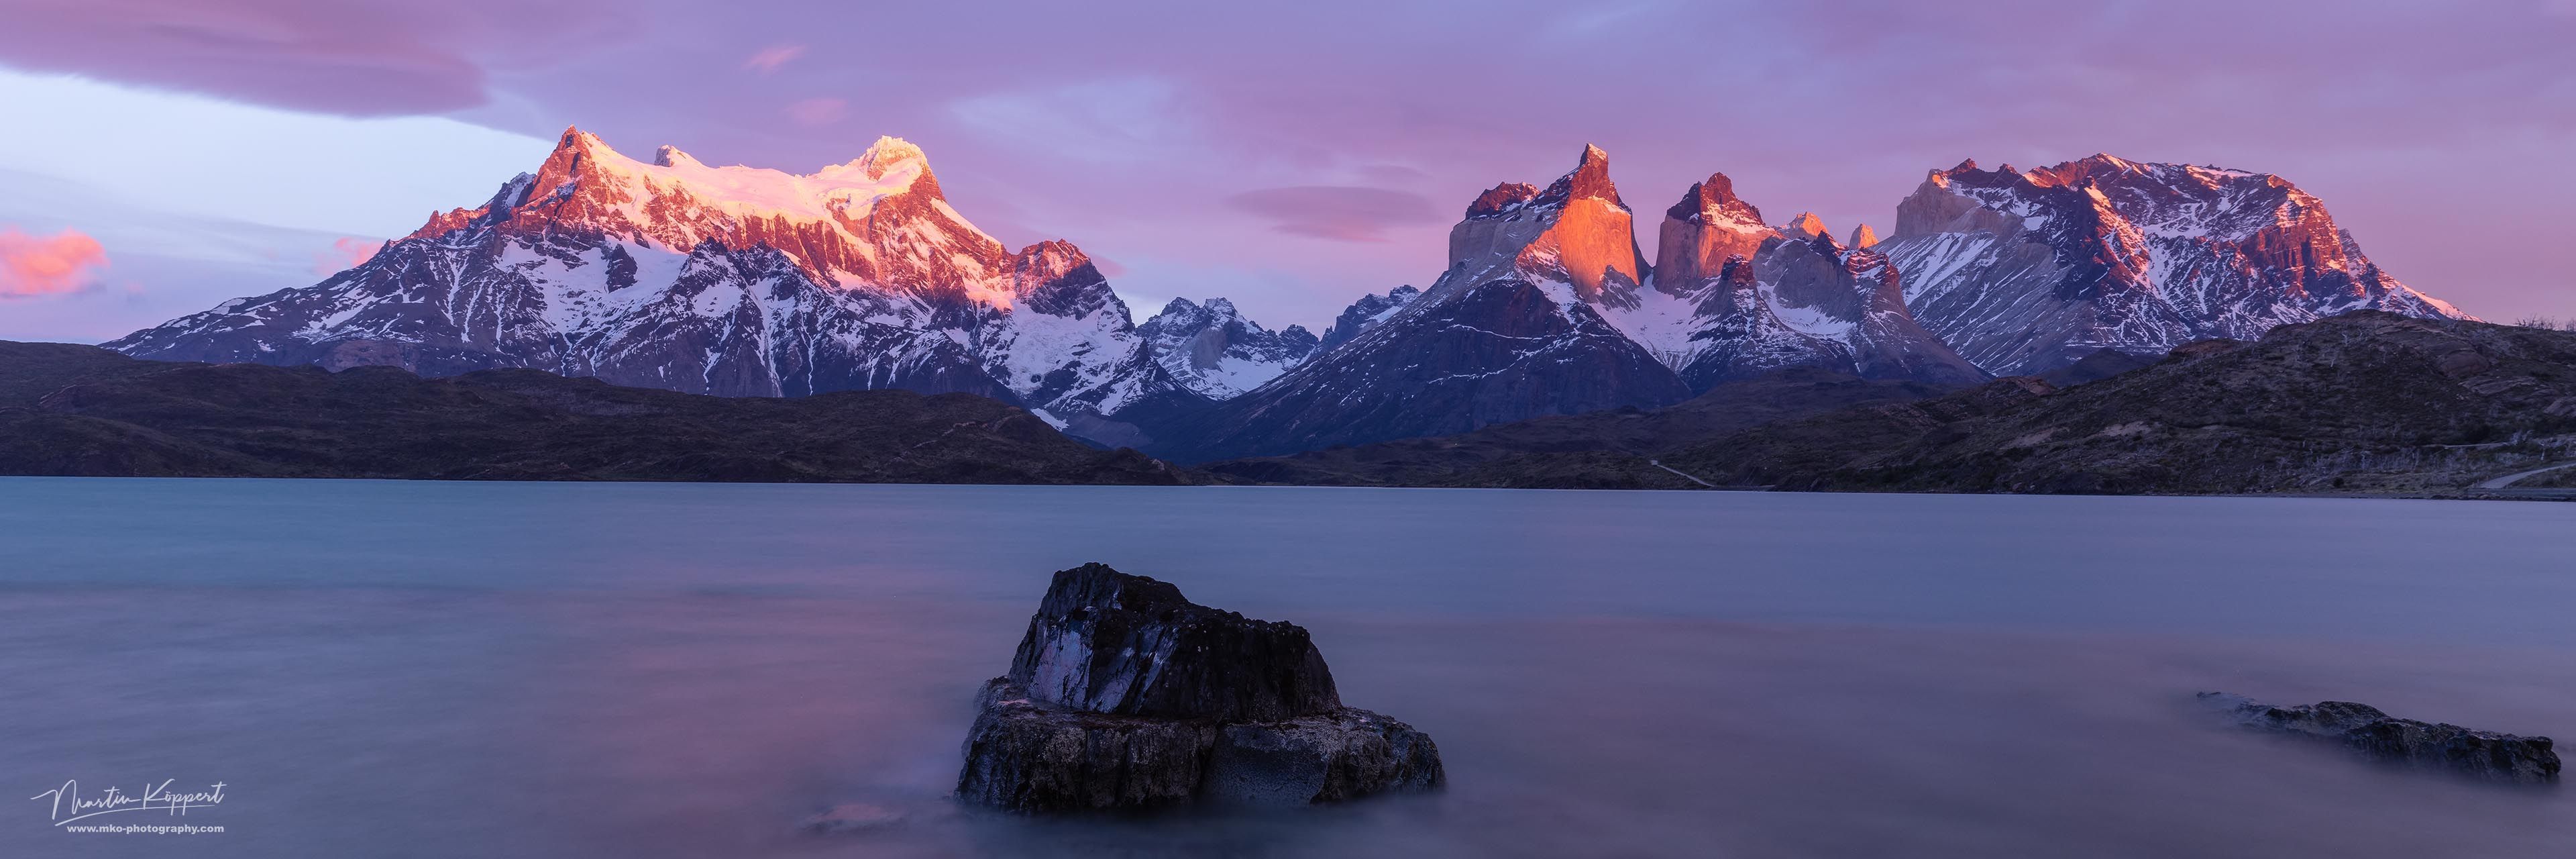 Torres_del_Paine_Patagonia_Chile